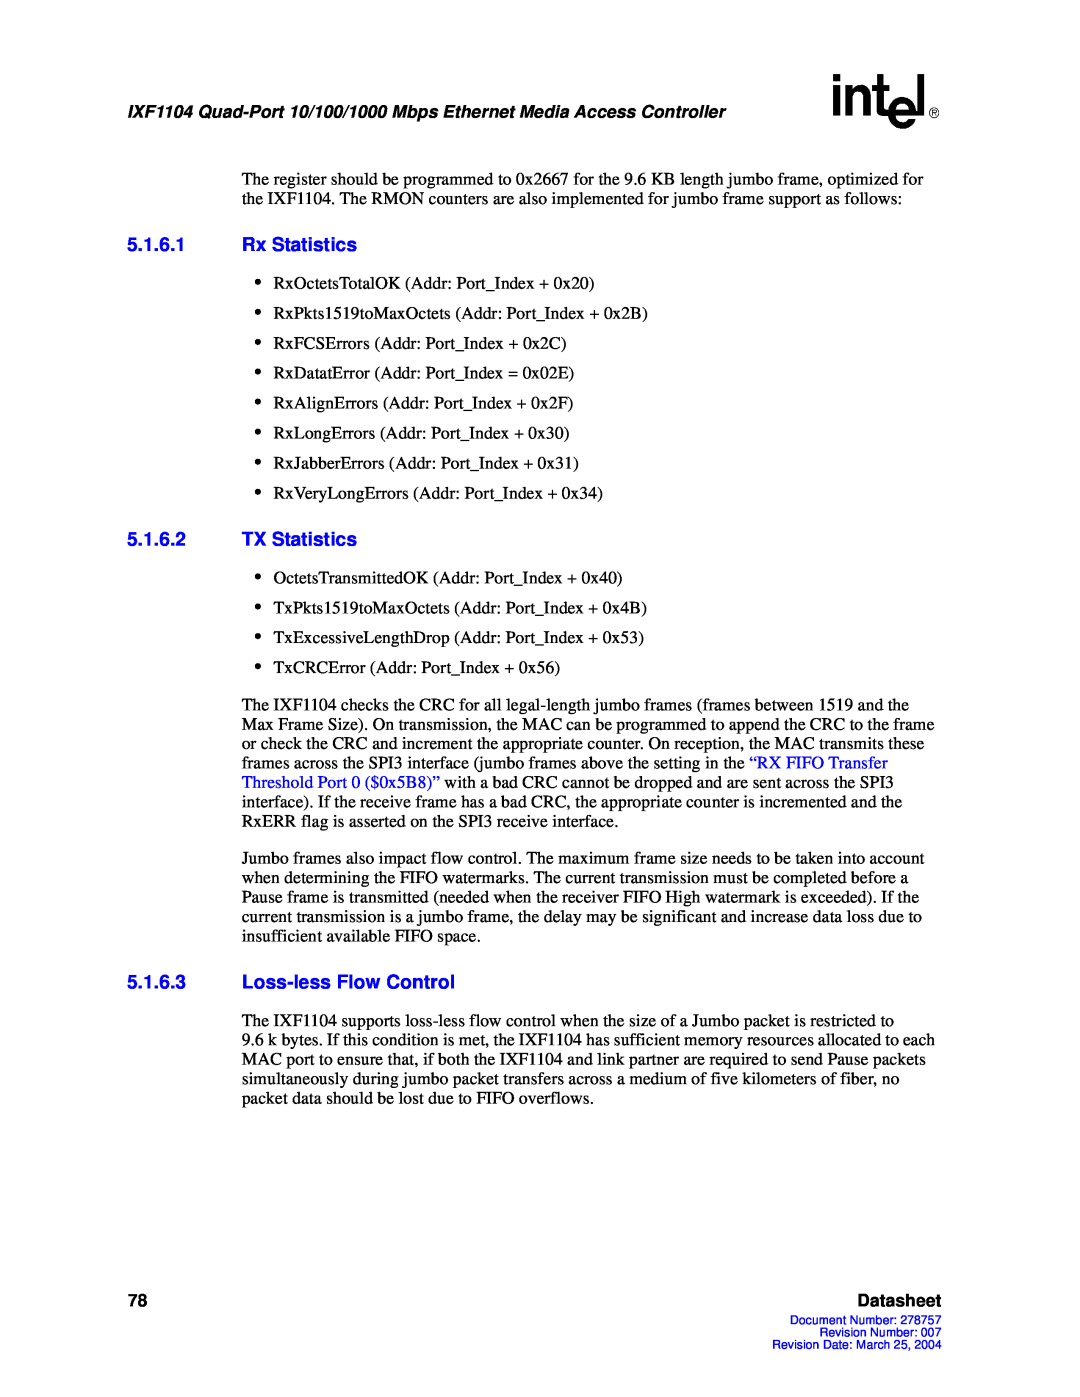 Intel IXF1104 manual 5.1.6.1Rx Statistics, 5.1.6.2TX Statistics, 5.1.6.3Loss-lessFlow Control, Datasheet 